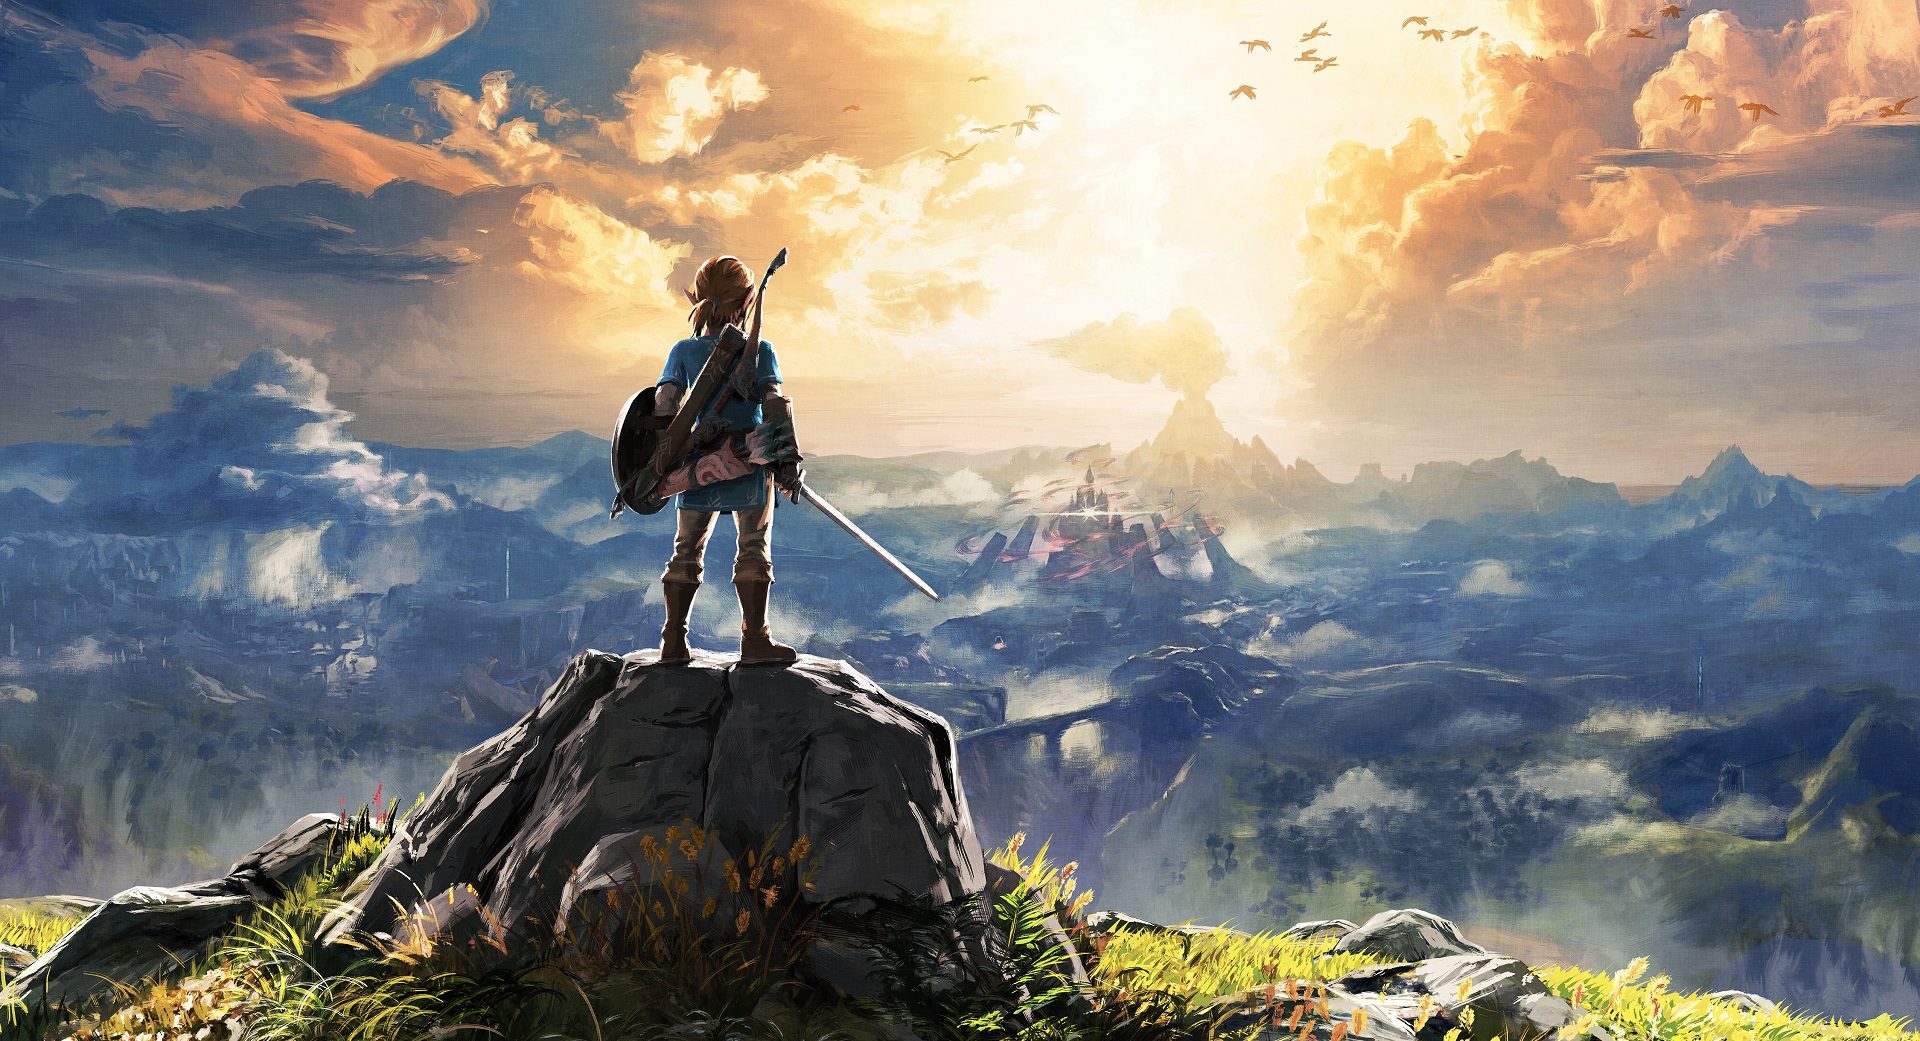 Zelda: Breath of the Wild multiplayer